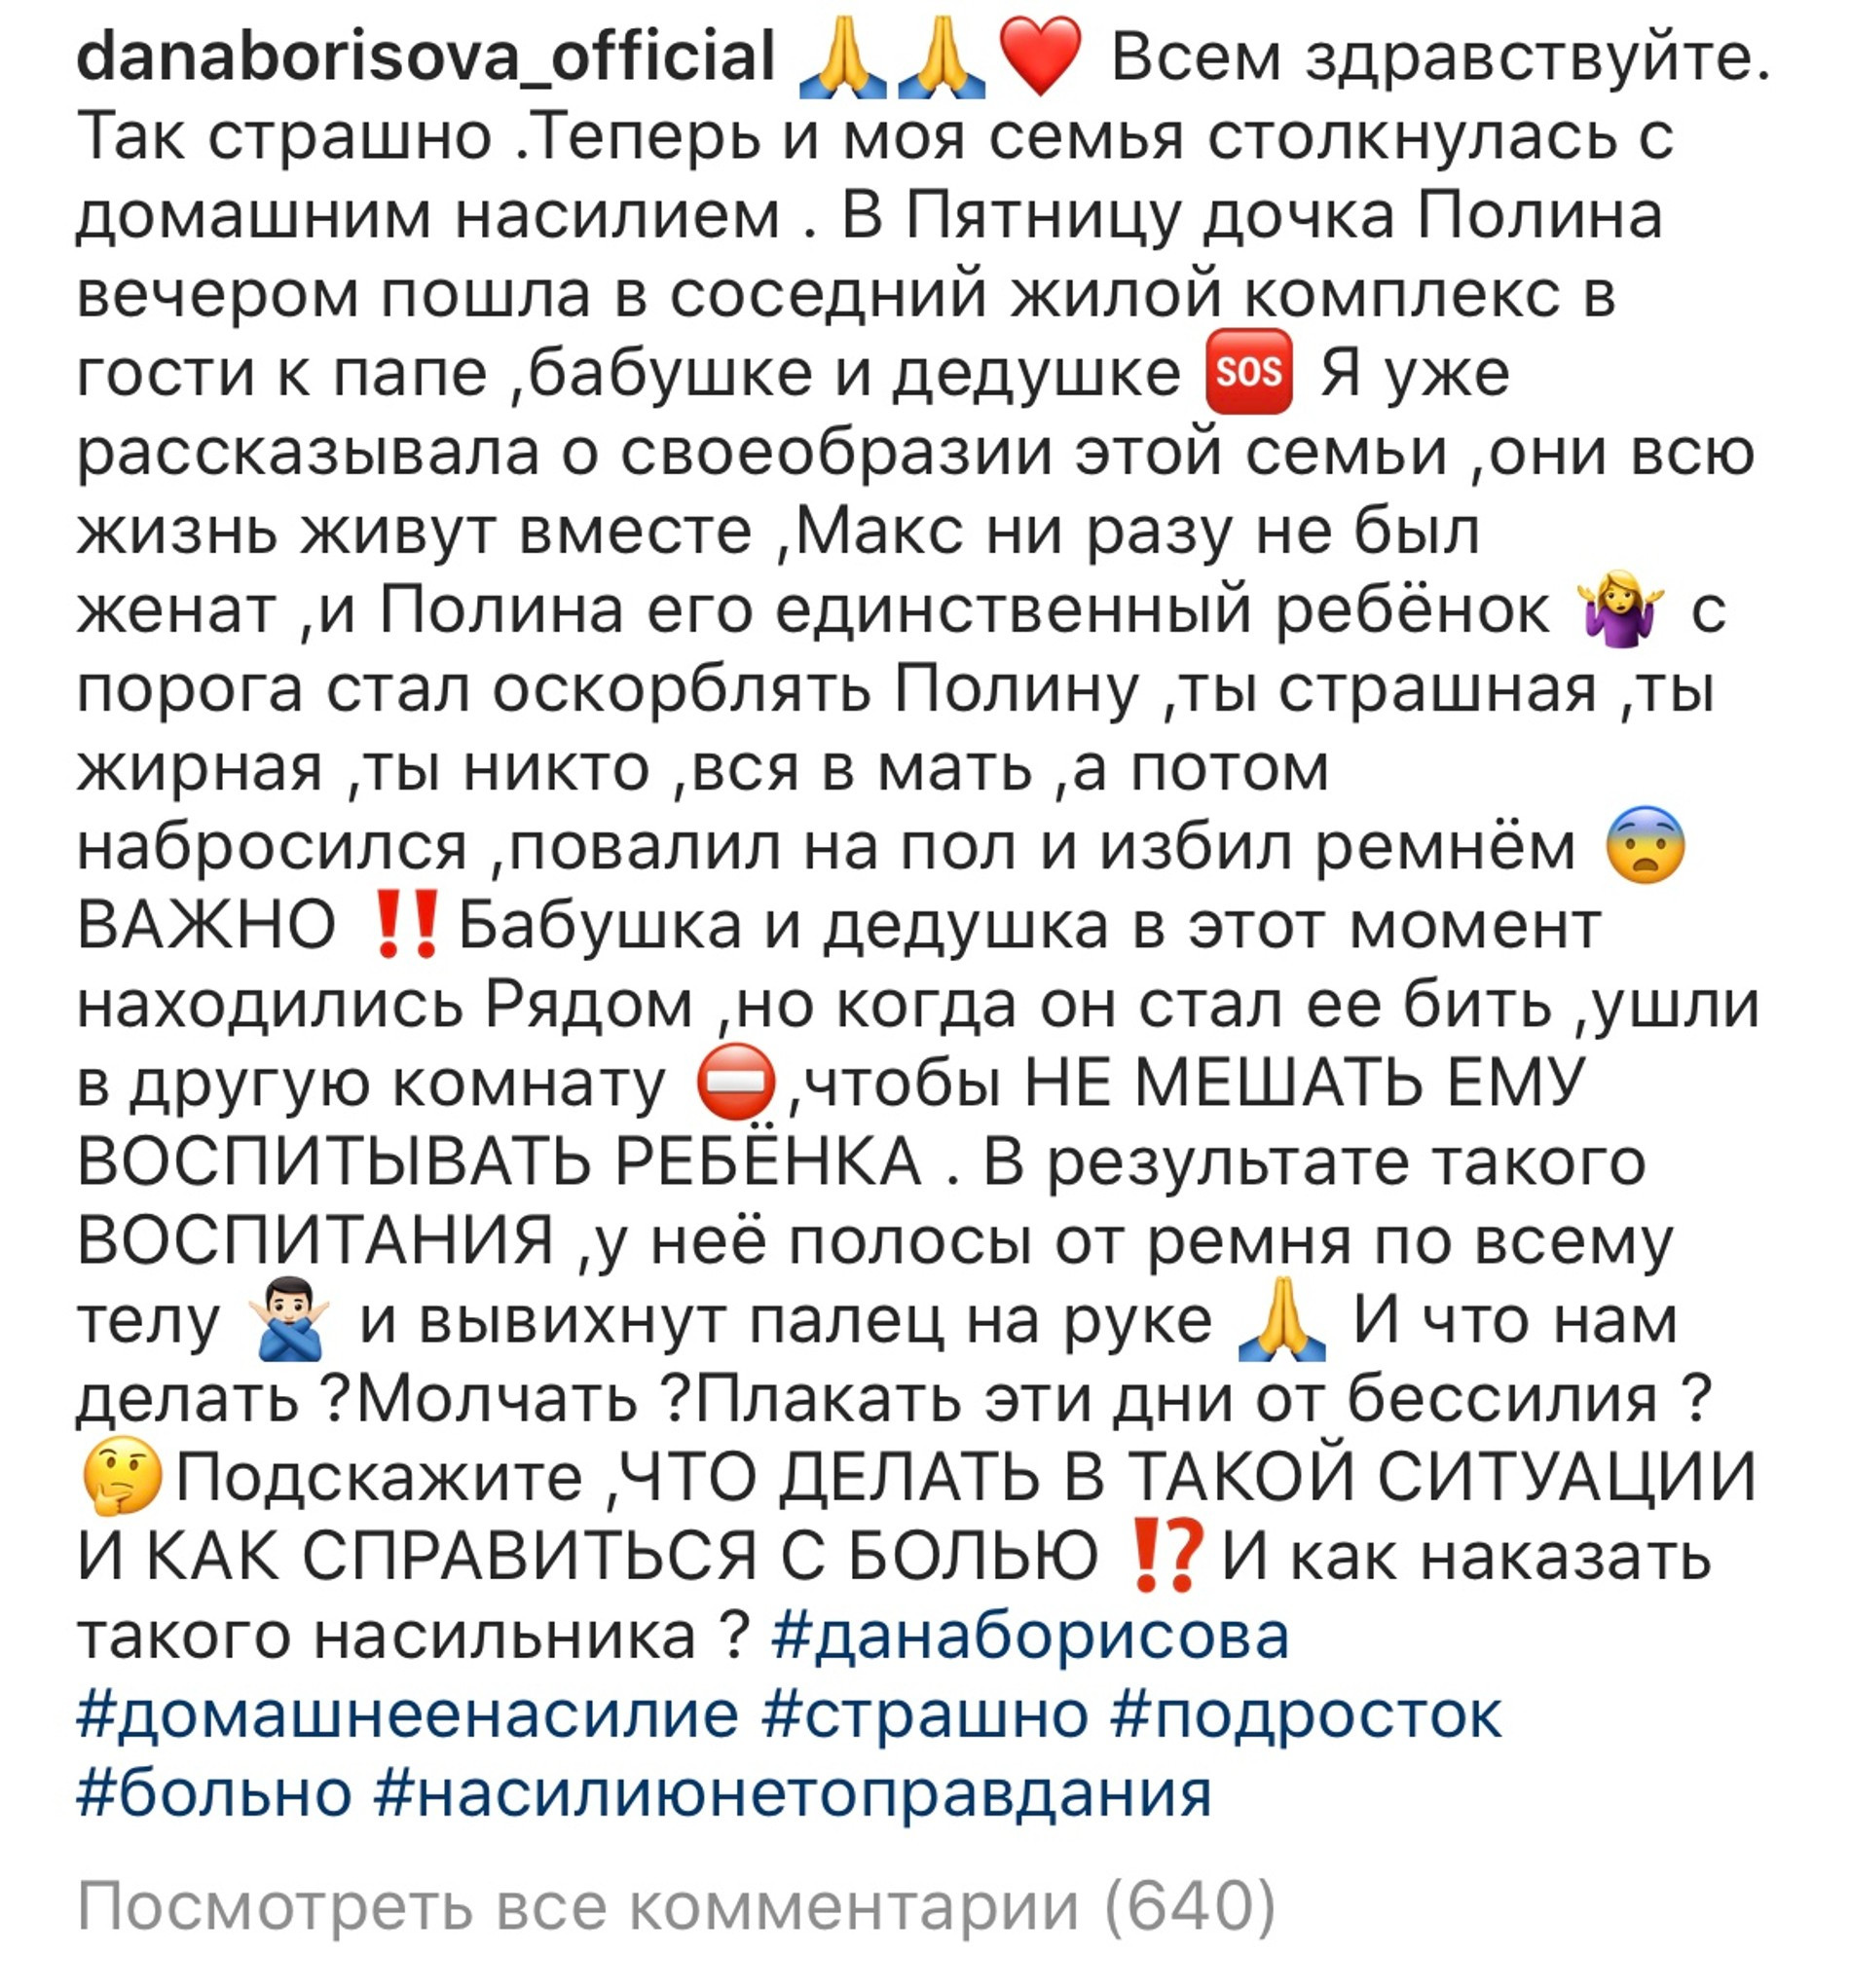 Пост Даны Борисовой в Инстаграм